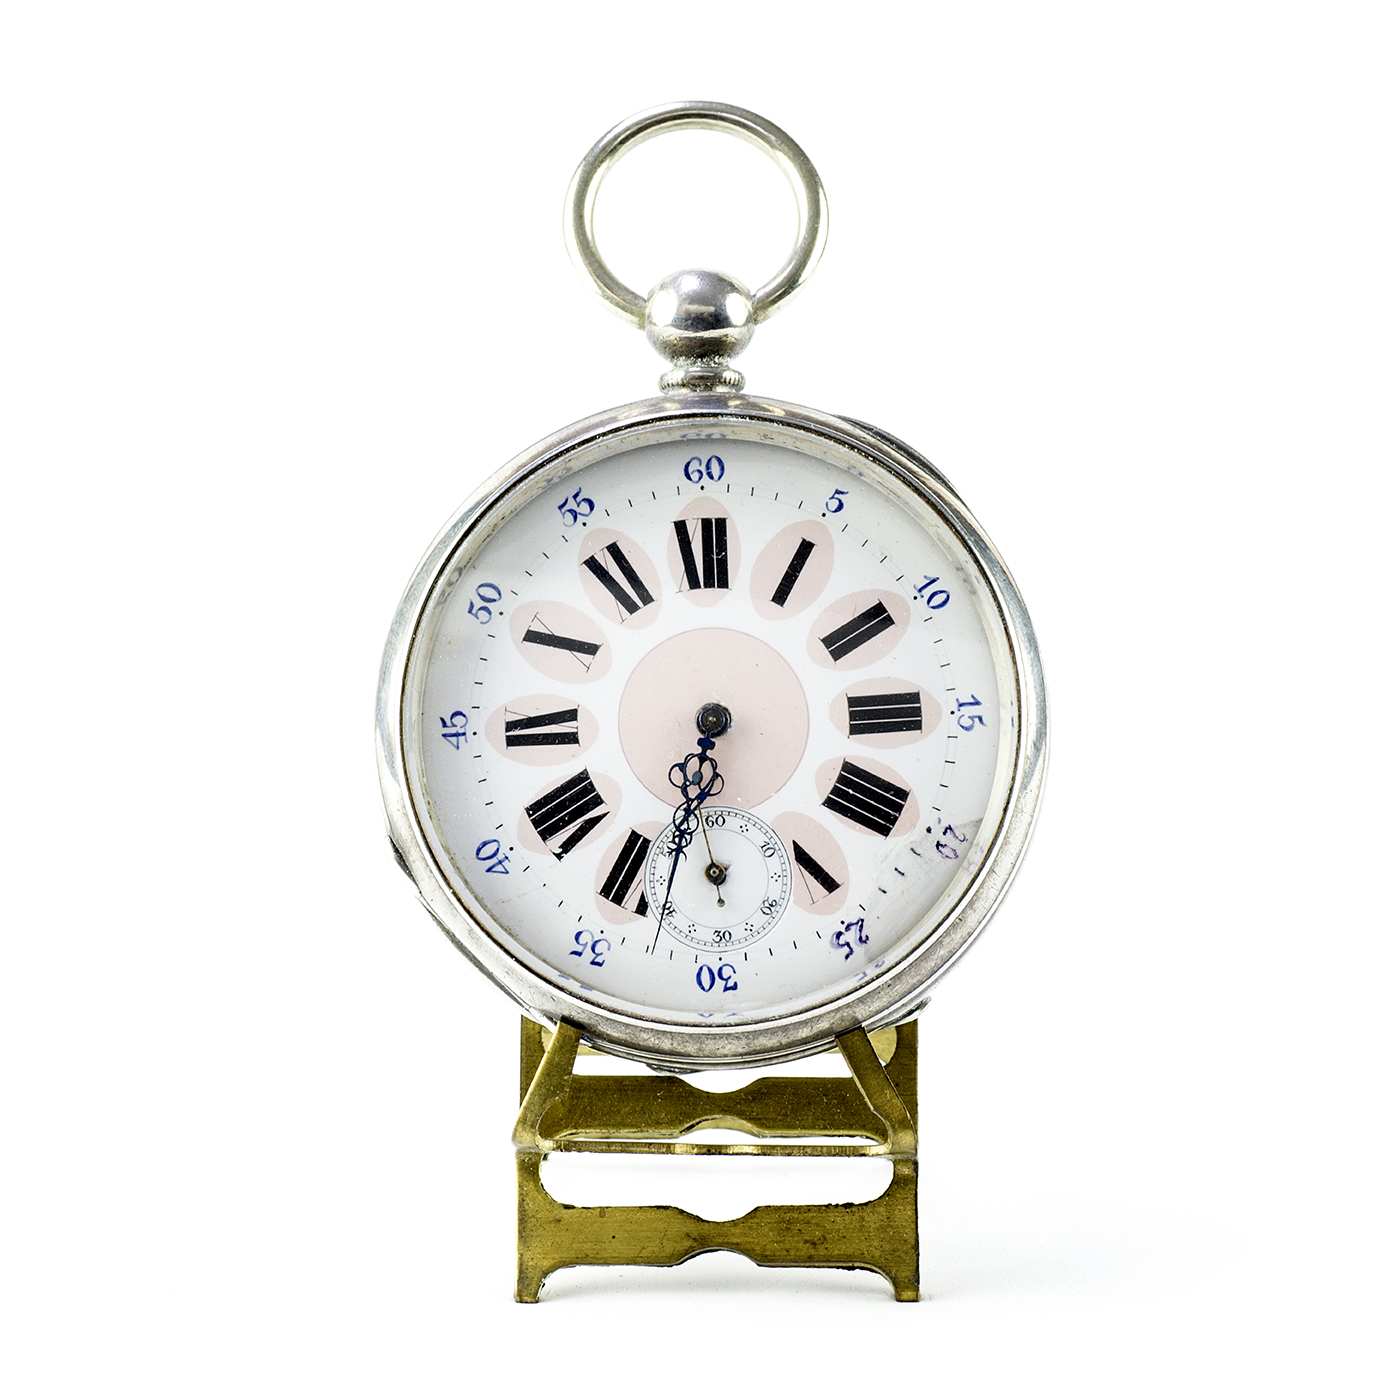 REGULATEUR. Reloj de Bolsillo, lepine. Suiza, ca. 11880